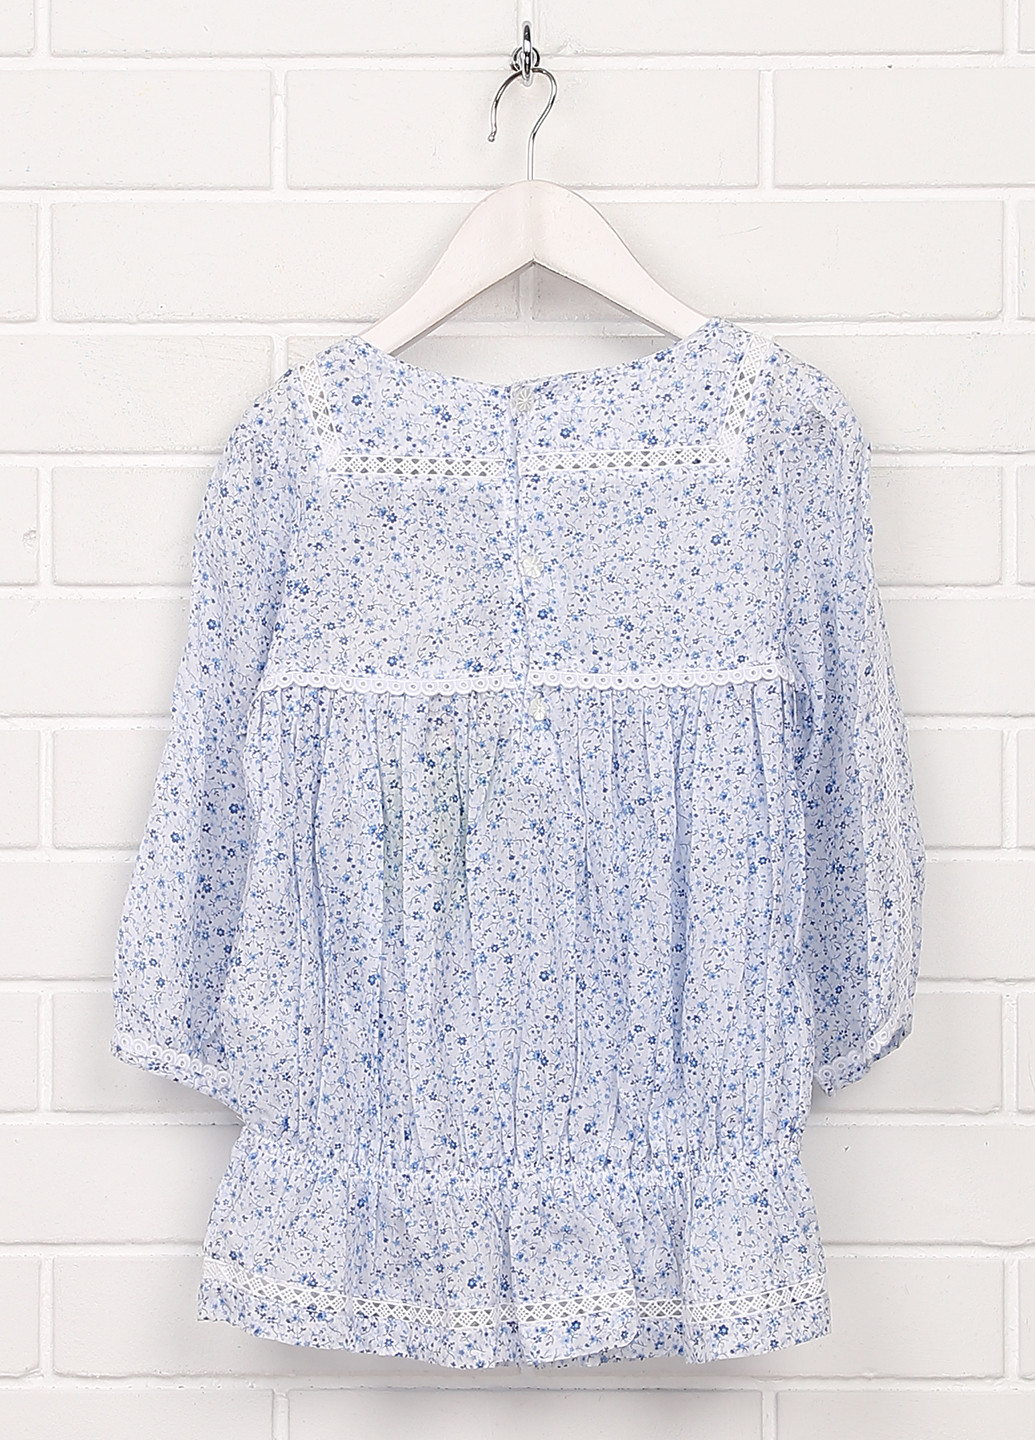 Голубая цветочной расцветки блузка Mayoral летняя